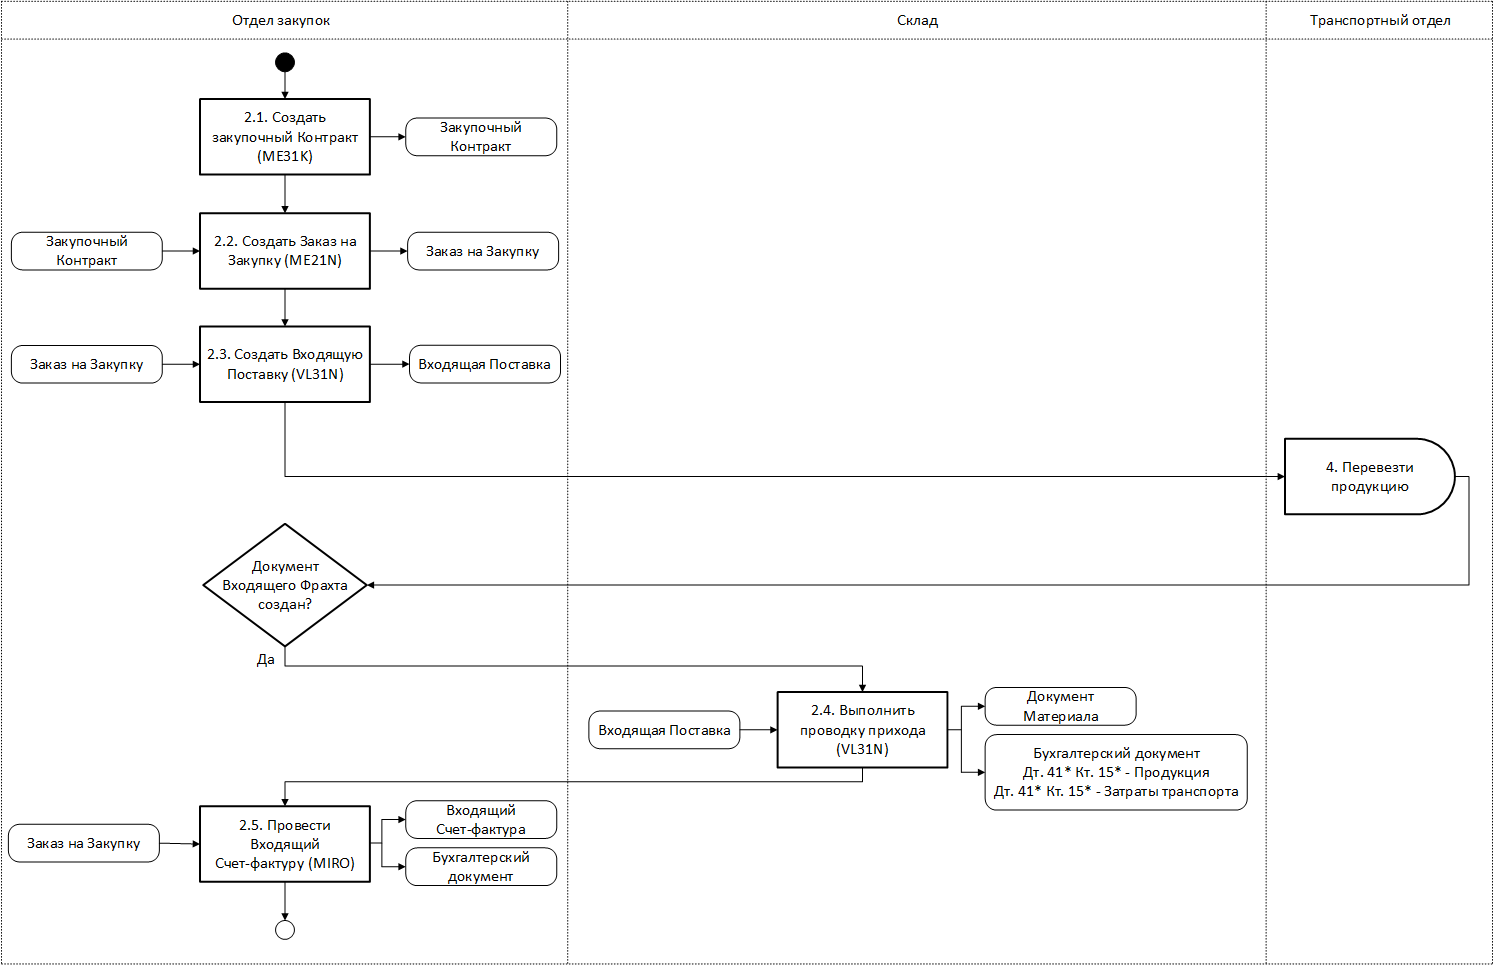 Шаги процесса закупки продукции у поставщика и его взаимосвязь с подпроцессом транспорта в LE-TRA в нотации UML Activity Diagram на 2-м уровне детализации